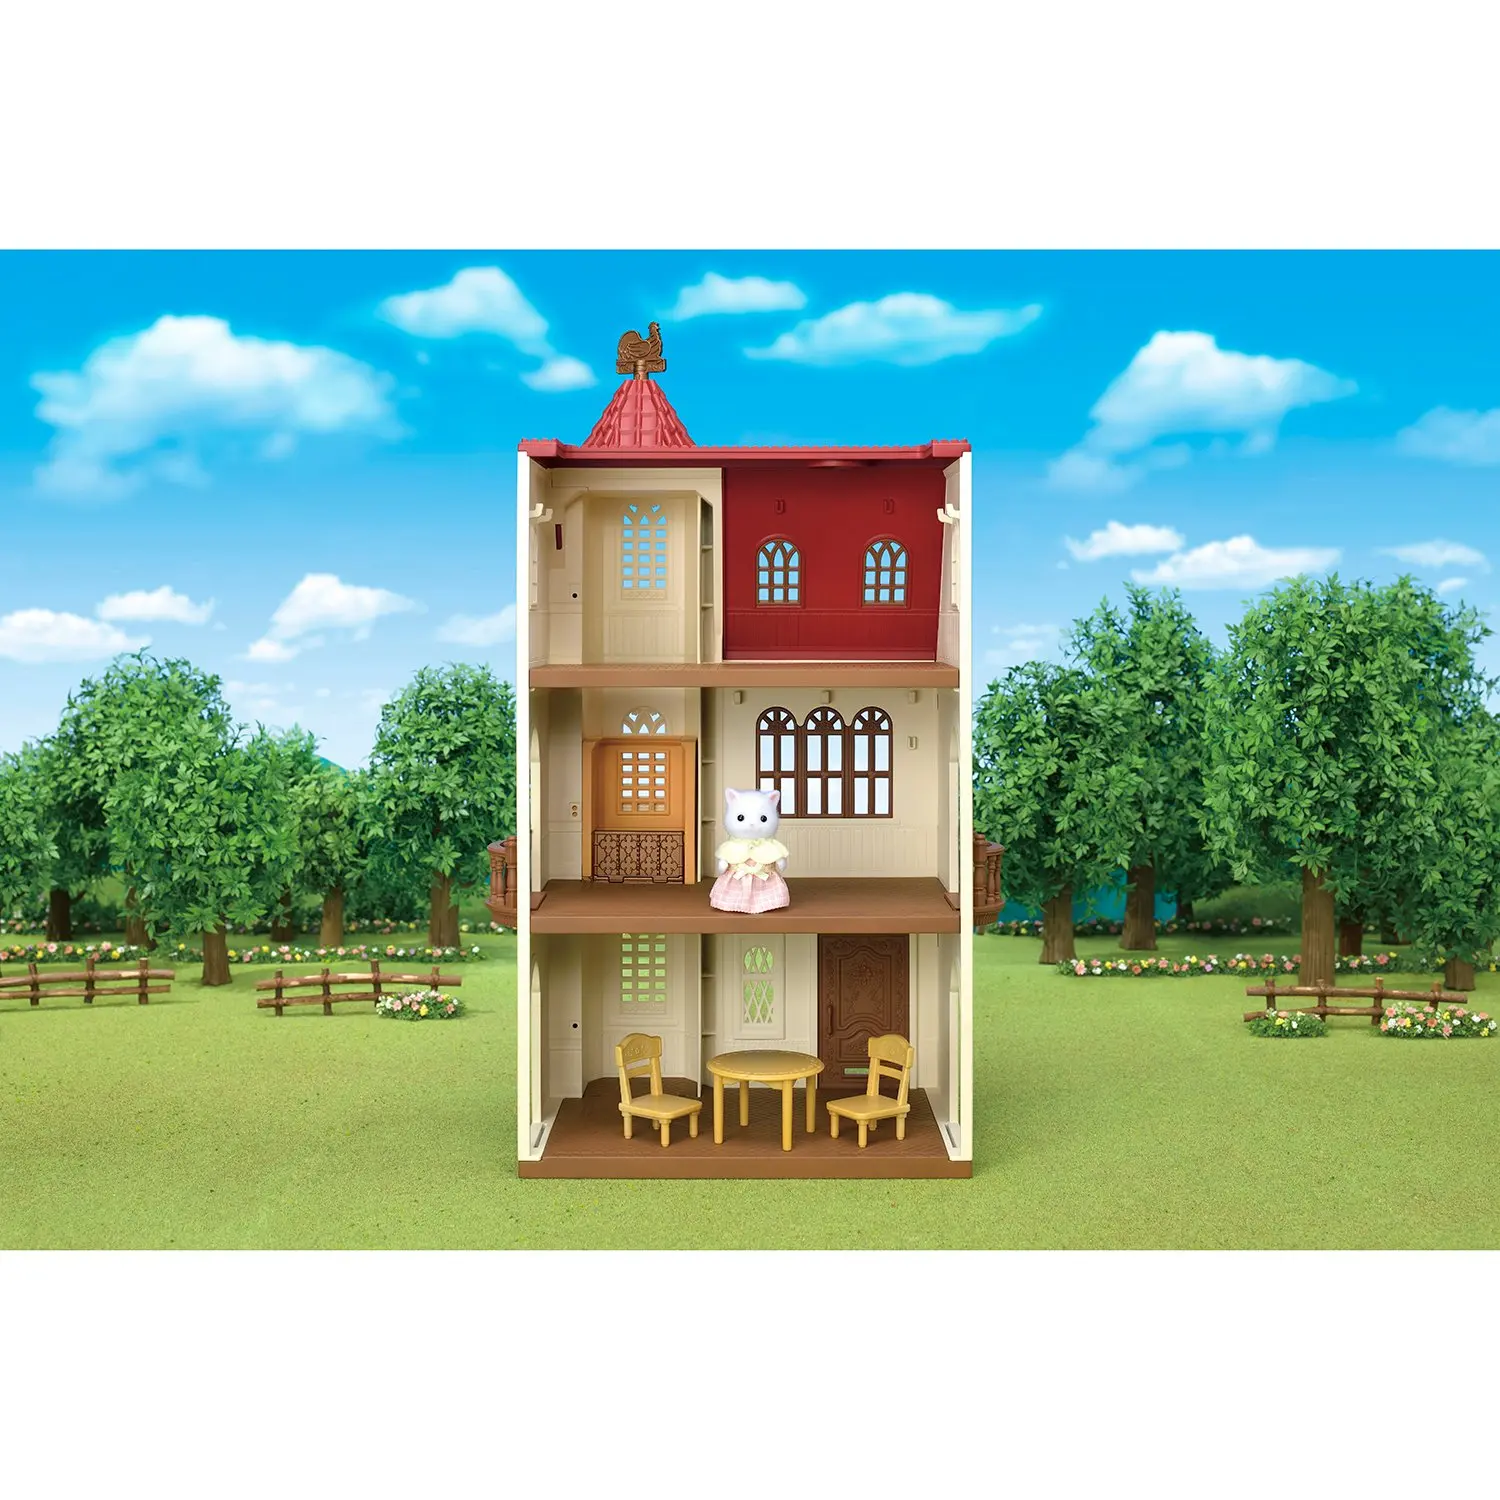 Трехэтажный дом с флюгером - фото